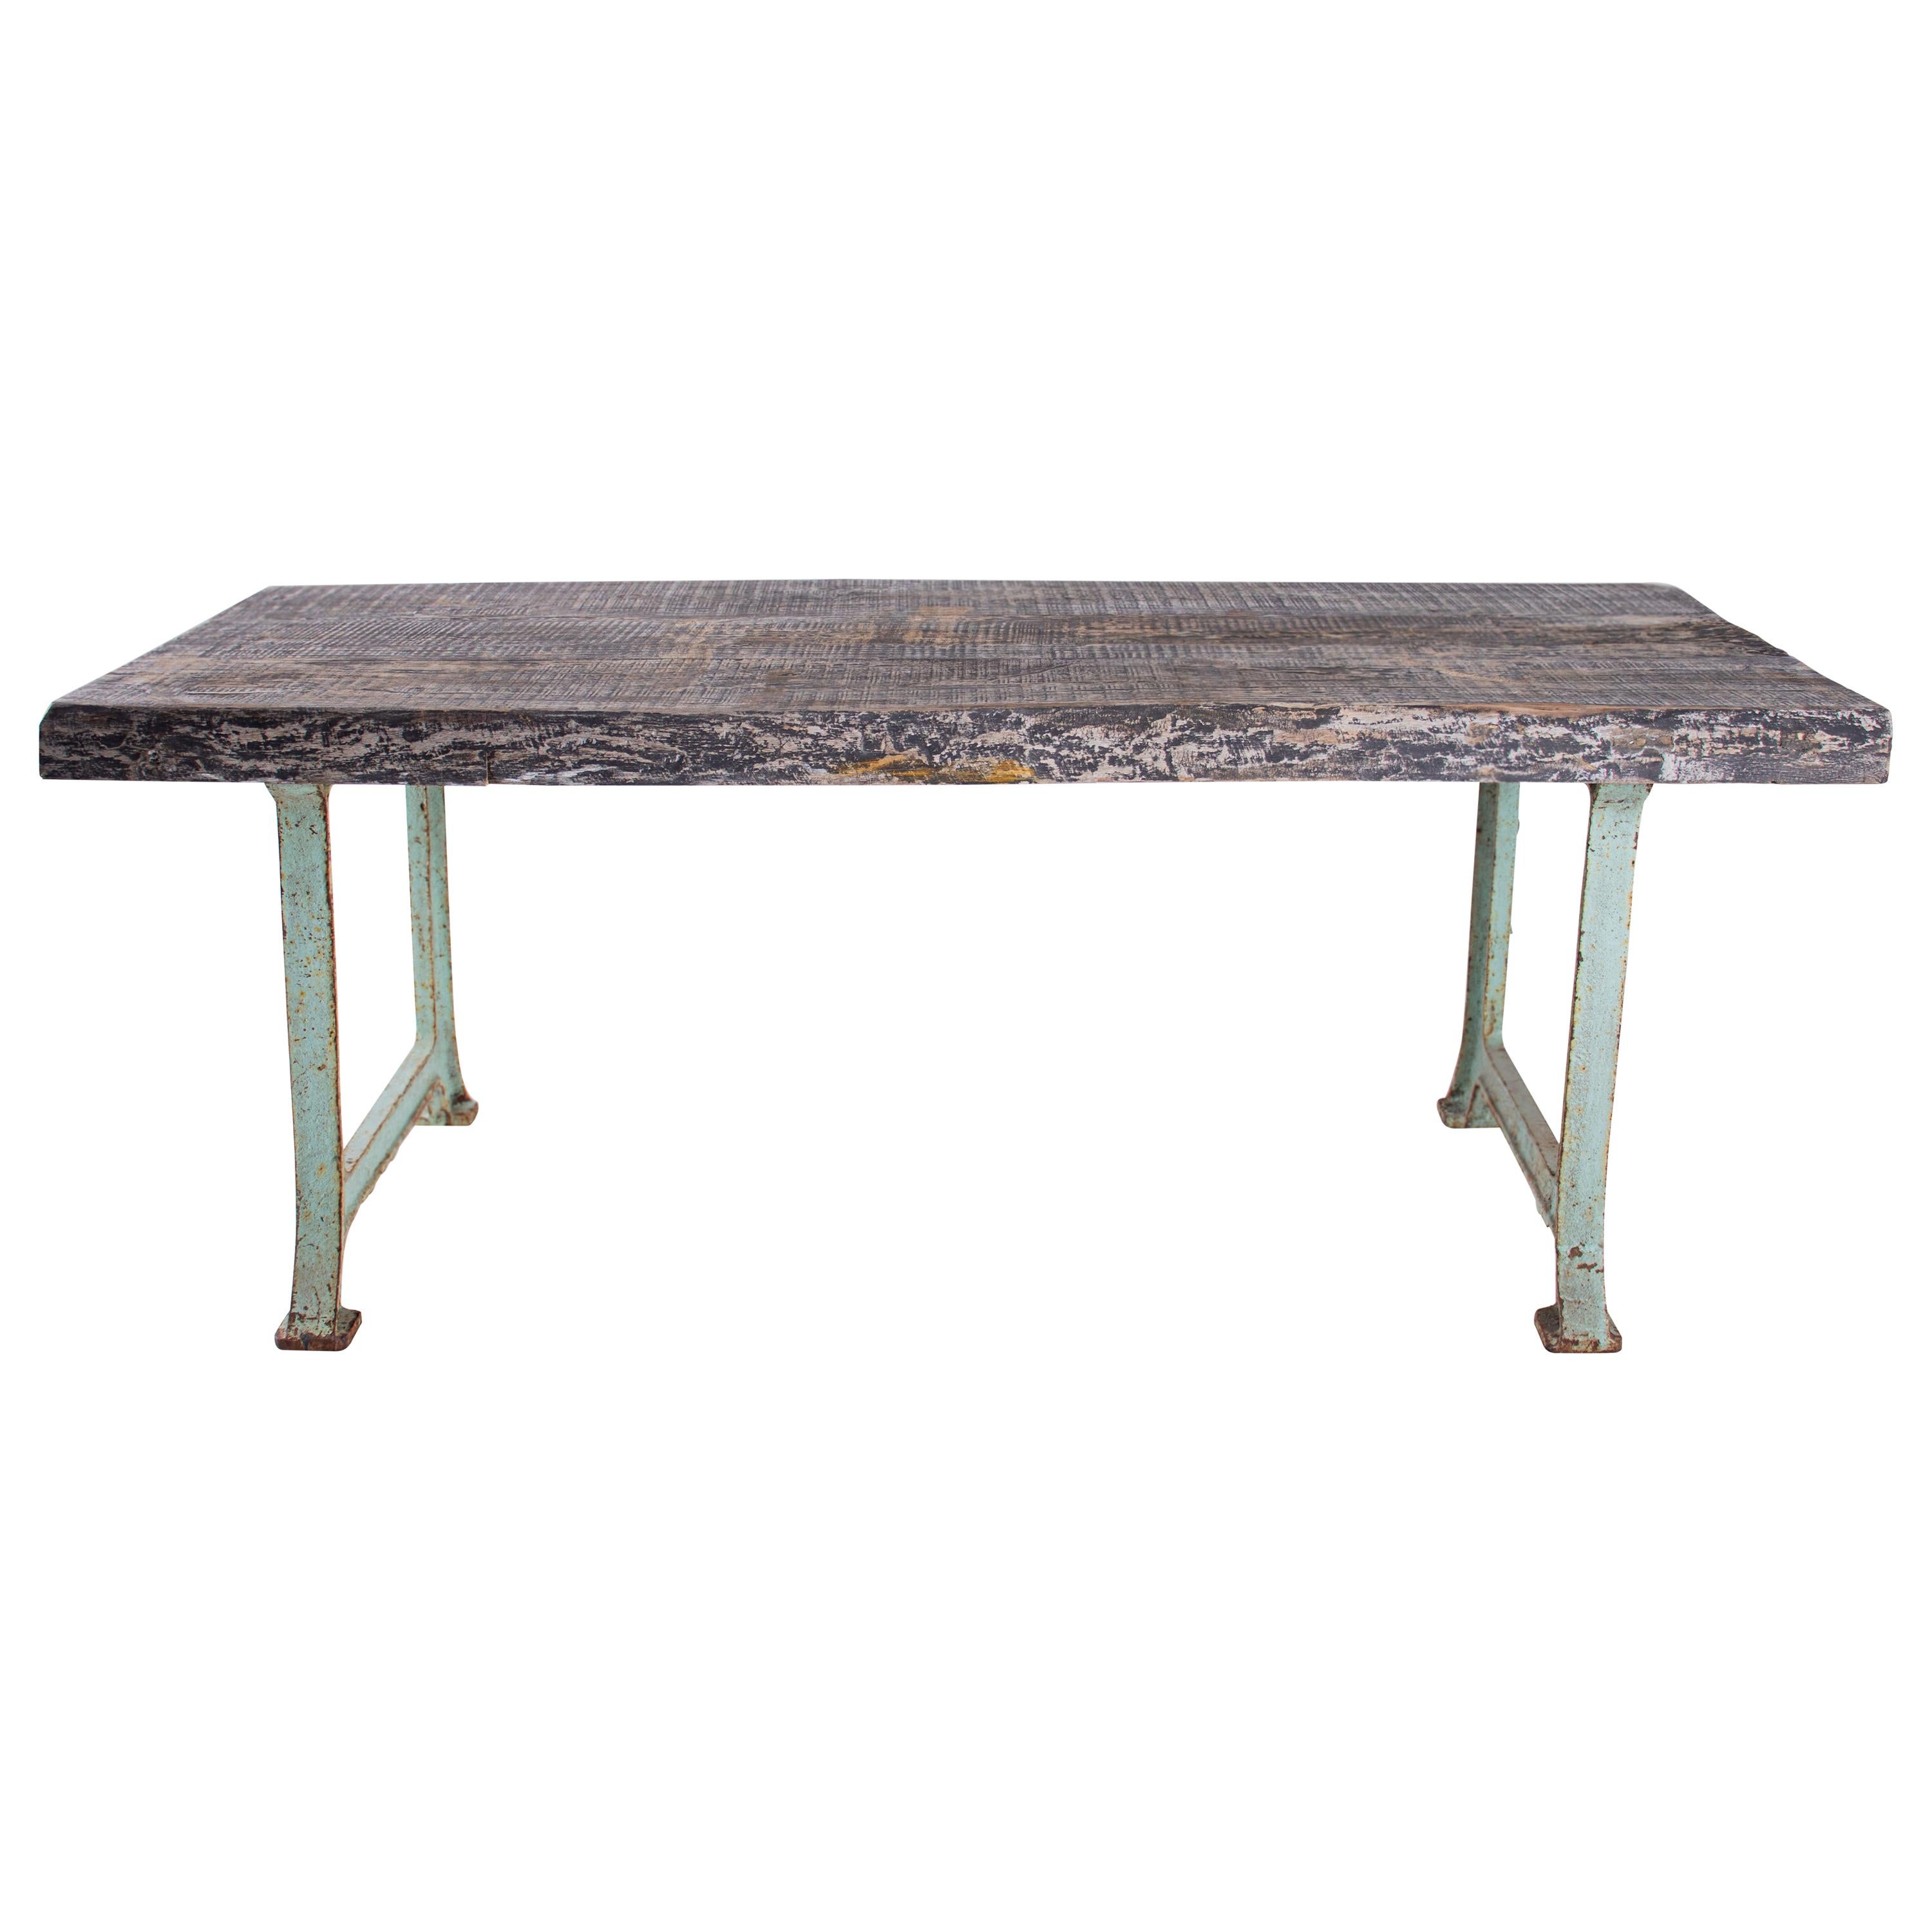 Table artisanale à bord vif sur base en acier antique avec patine de peinture d'origine